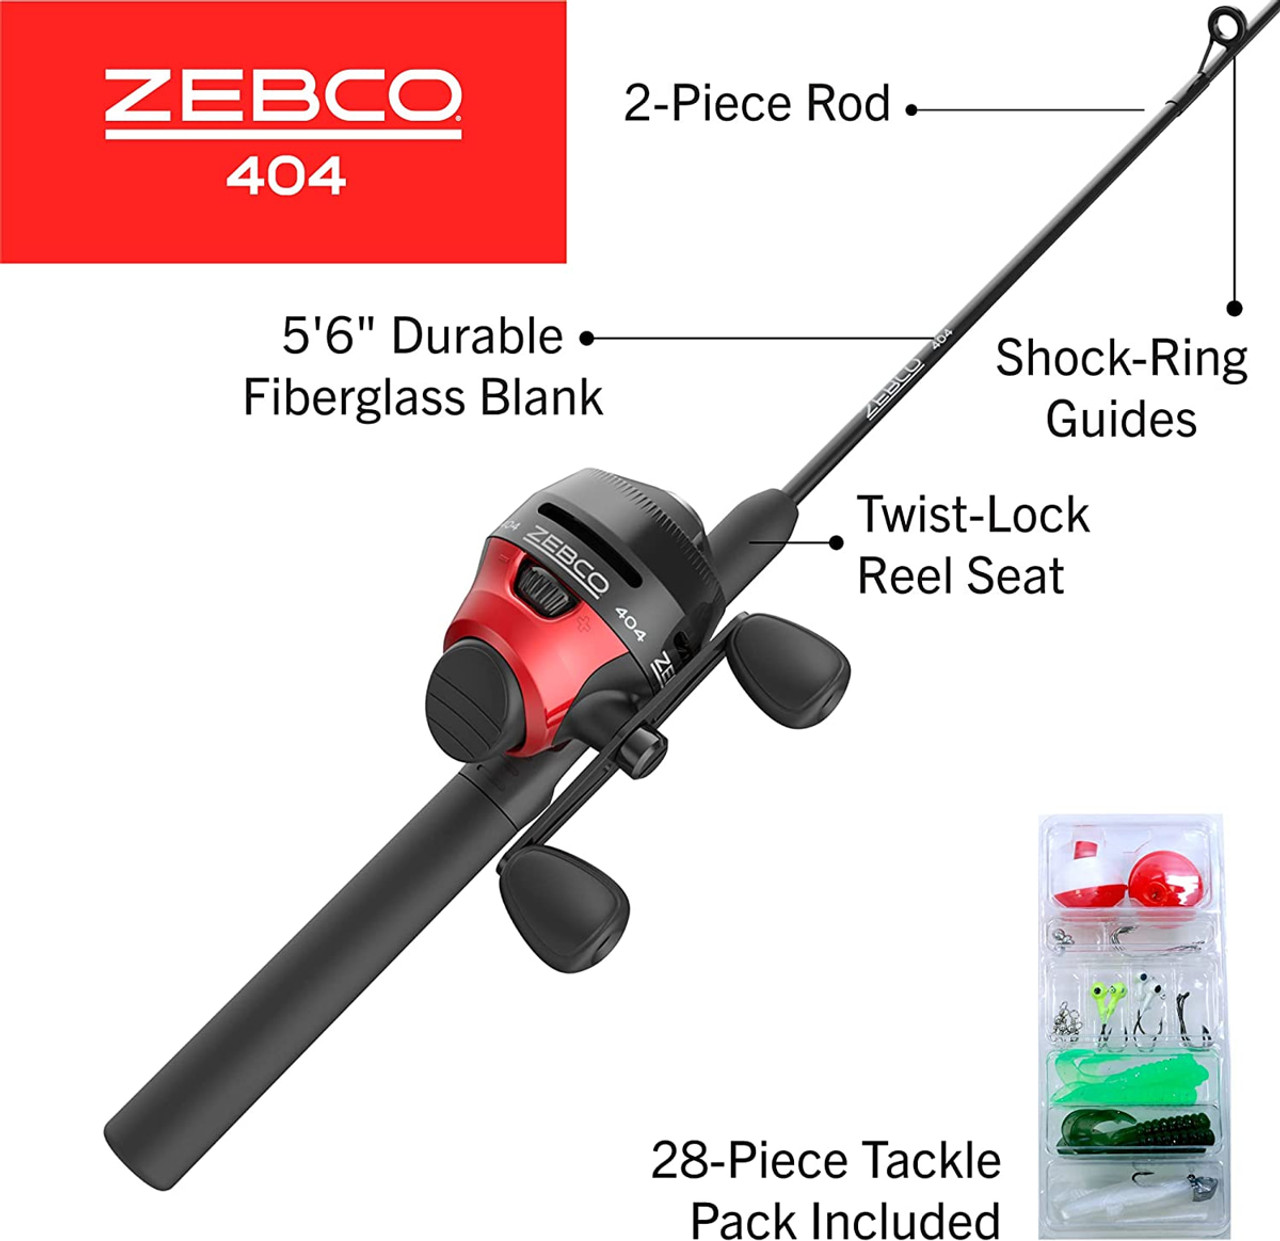 Zebco 404 Spincast Reel - Size 40